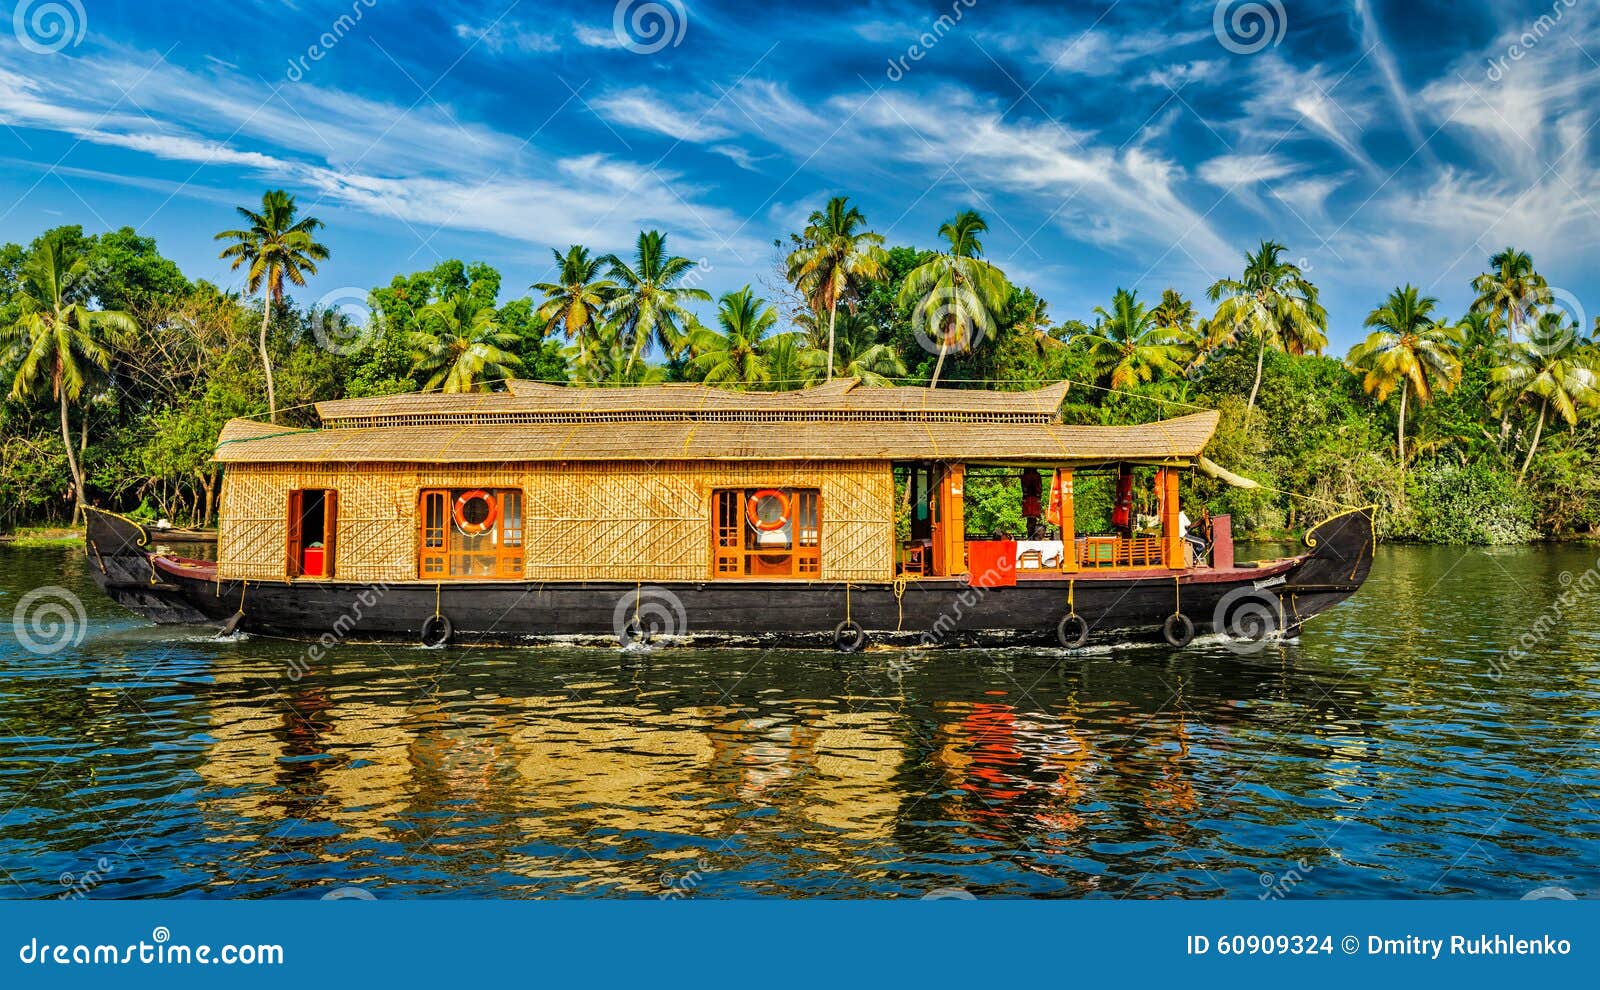 houseboat on kerala backwaters, india